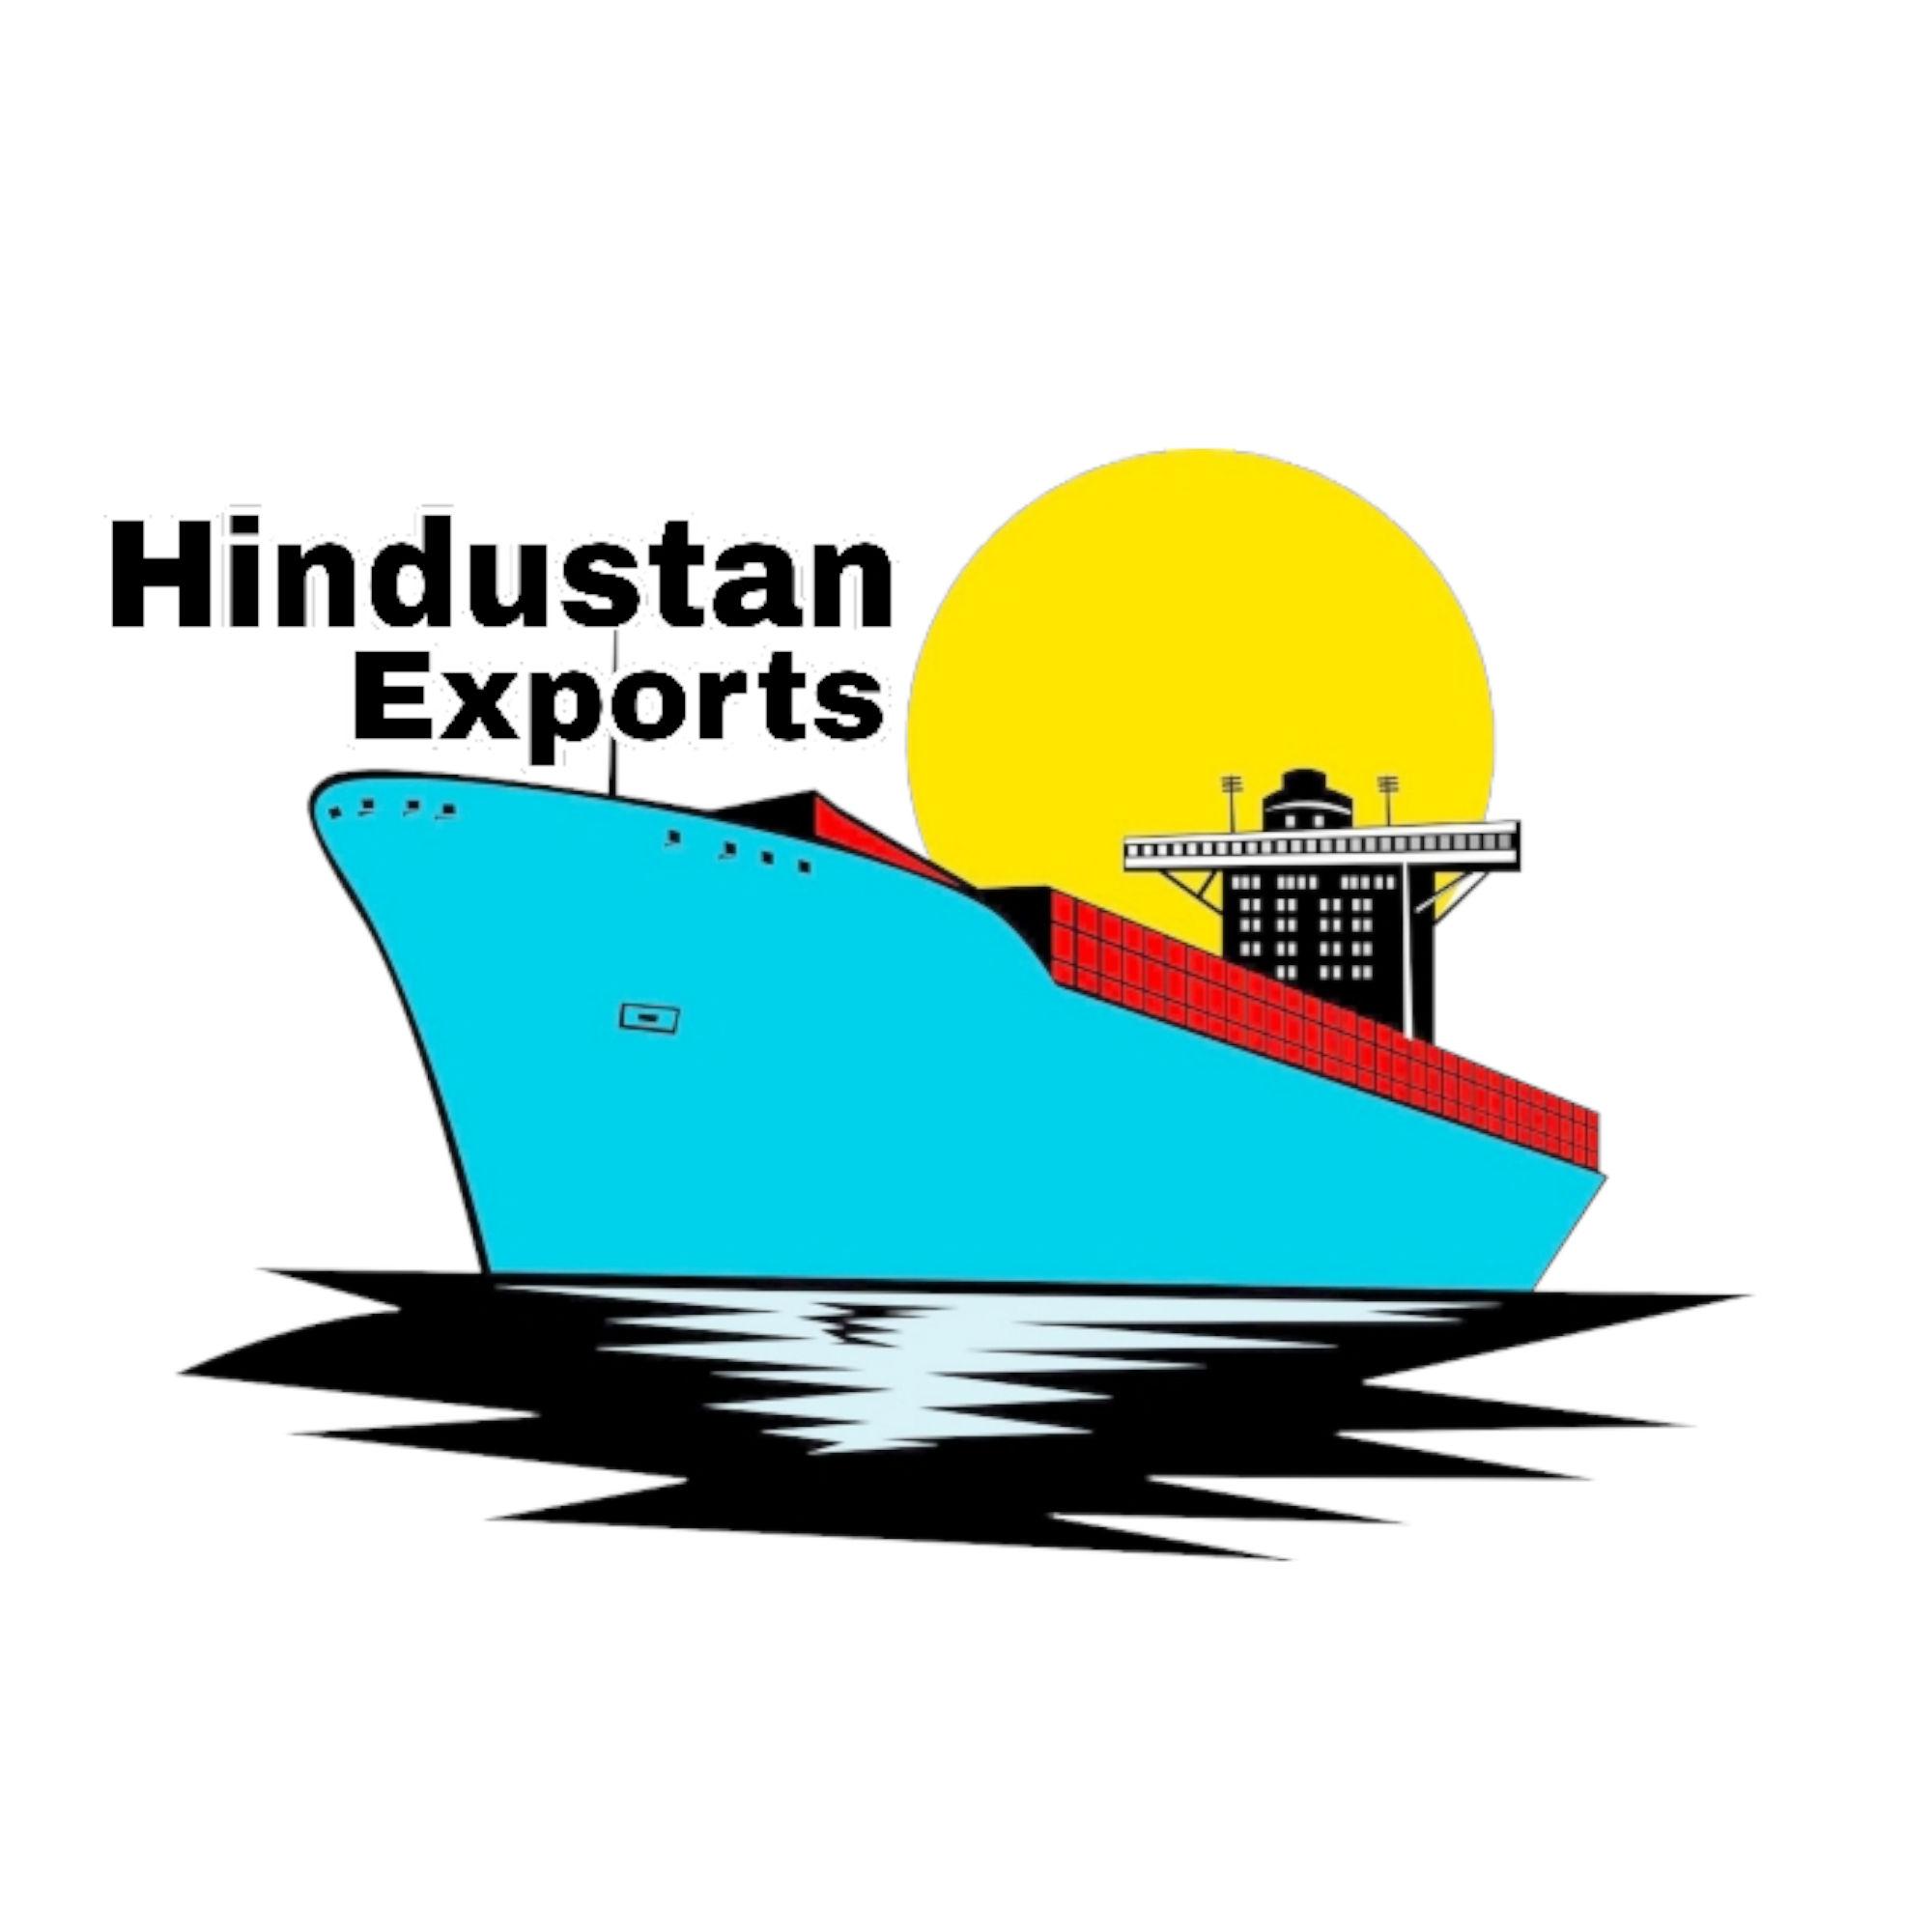 Hindustan Exports